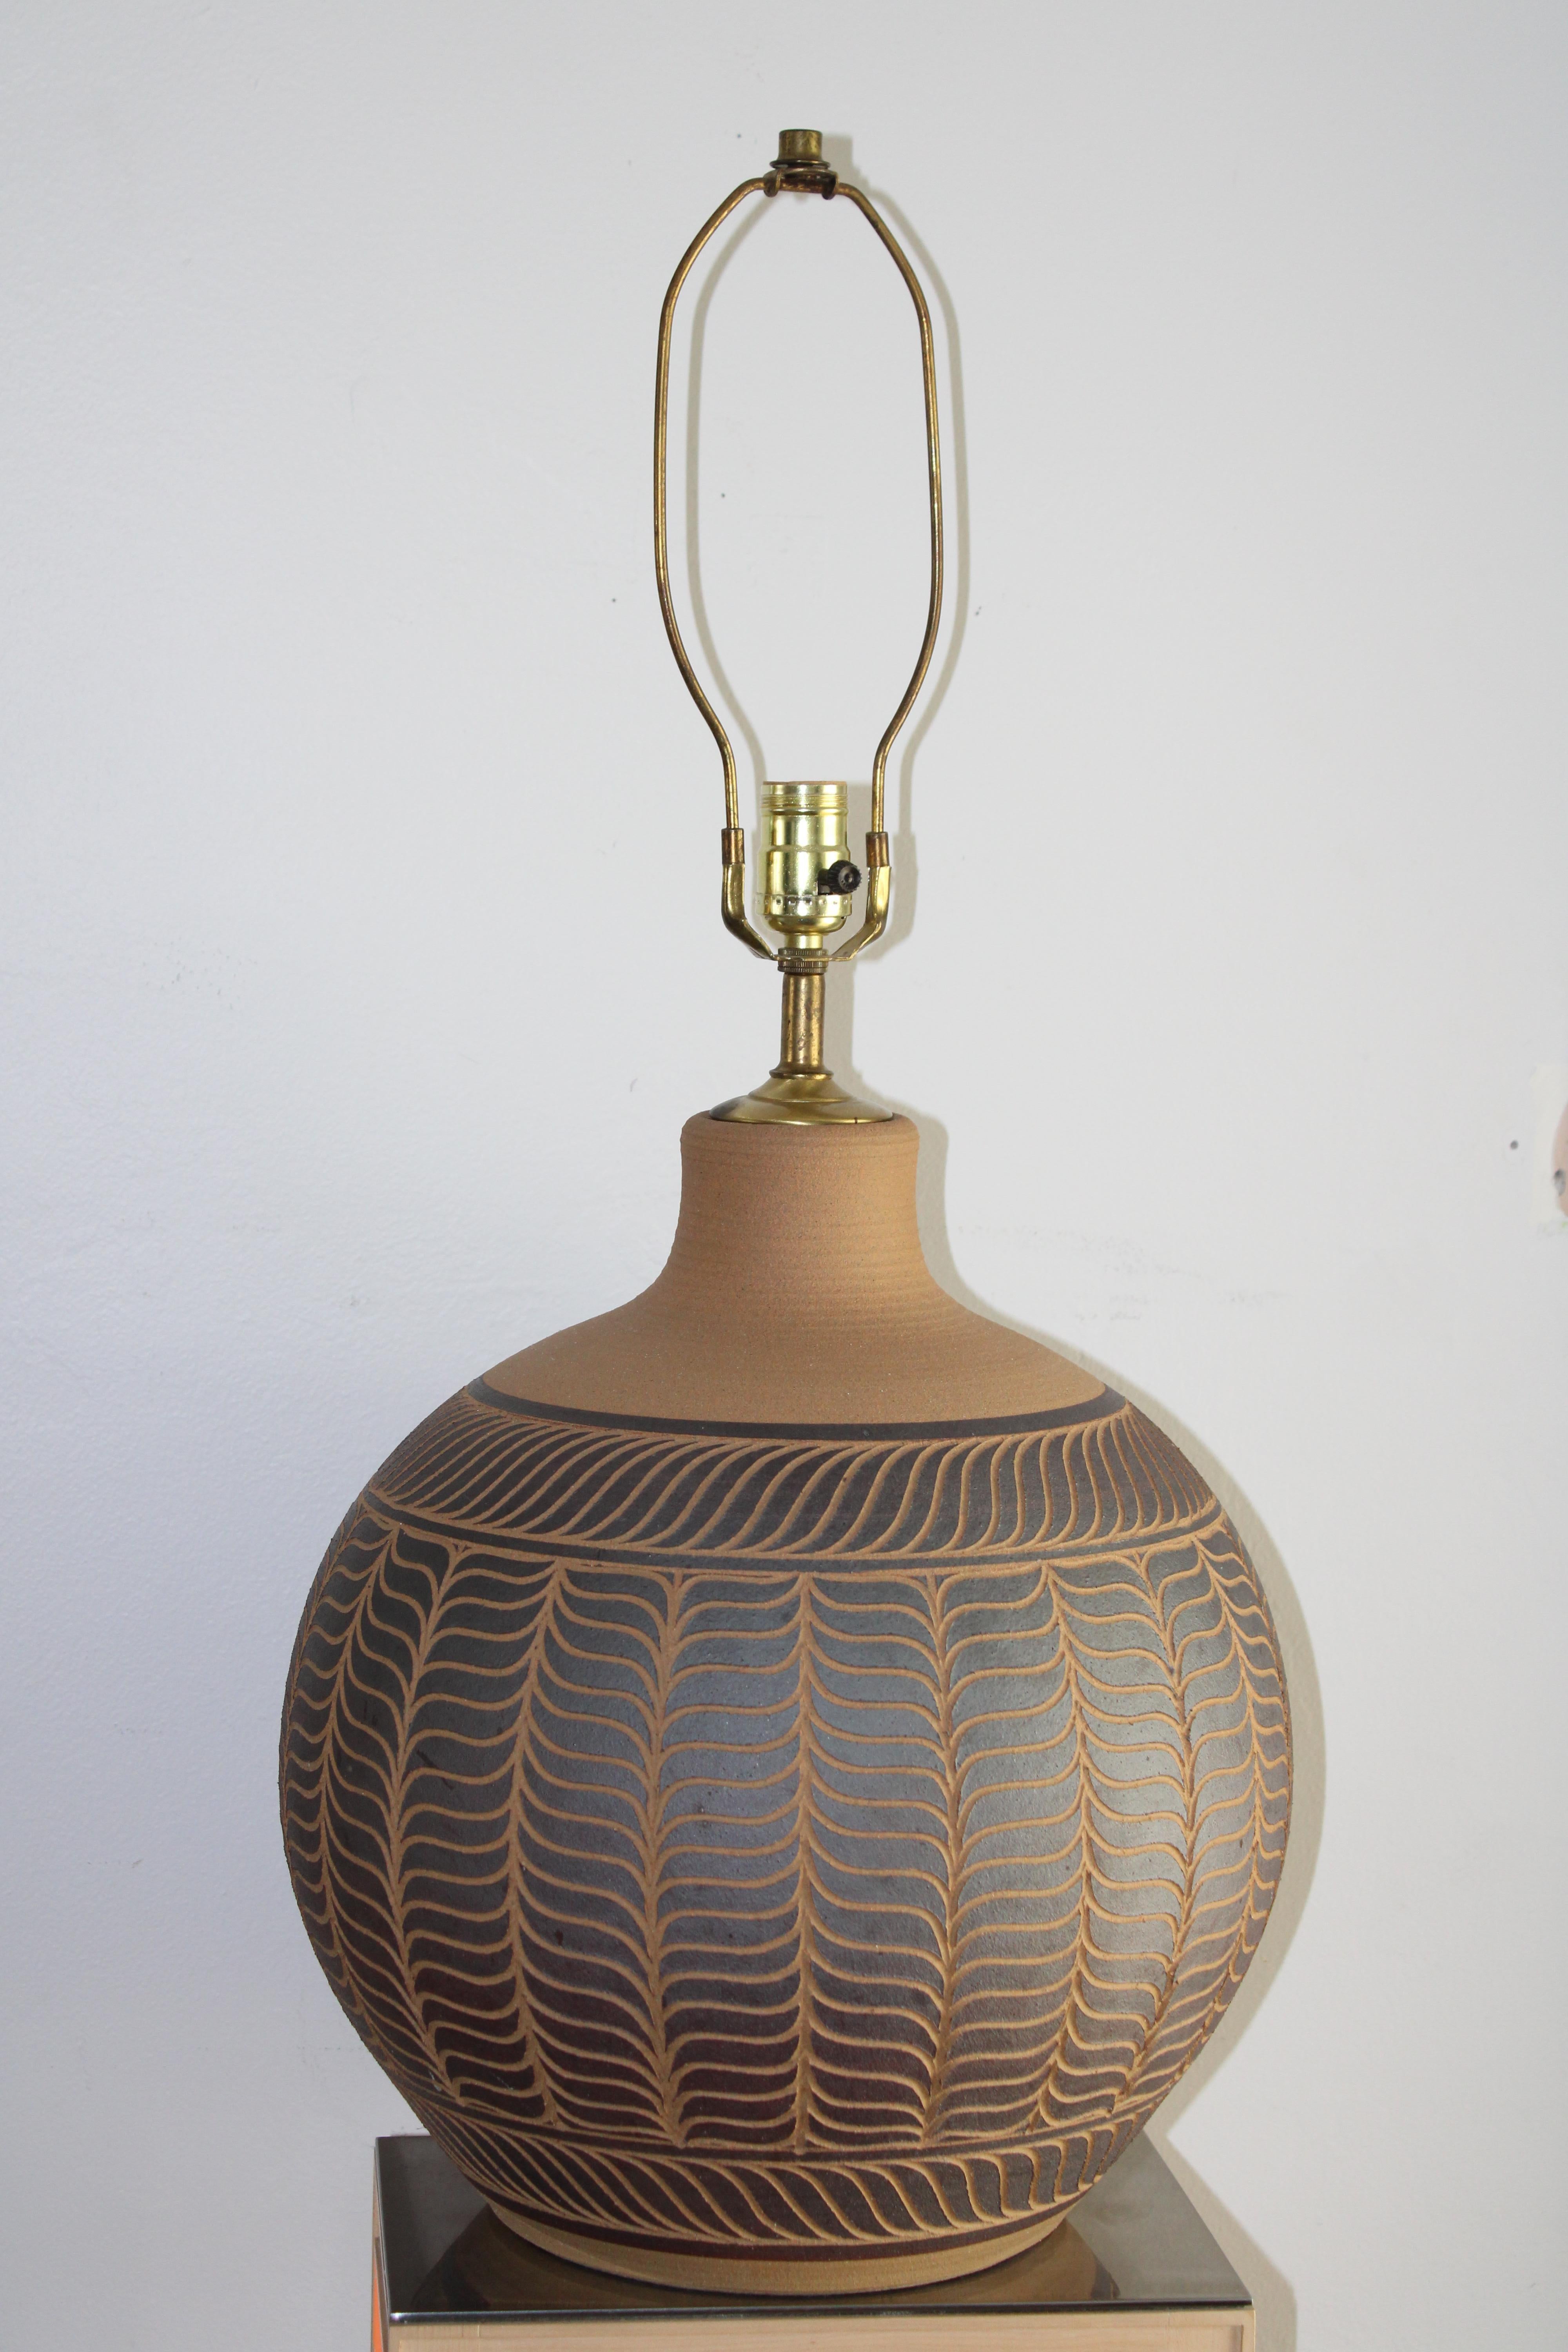 Voici une magnifique lampe de table en céramique émaillée faite à la main par les céramistes de l'Oregon Larry et Terry Brown, signée 